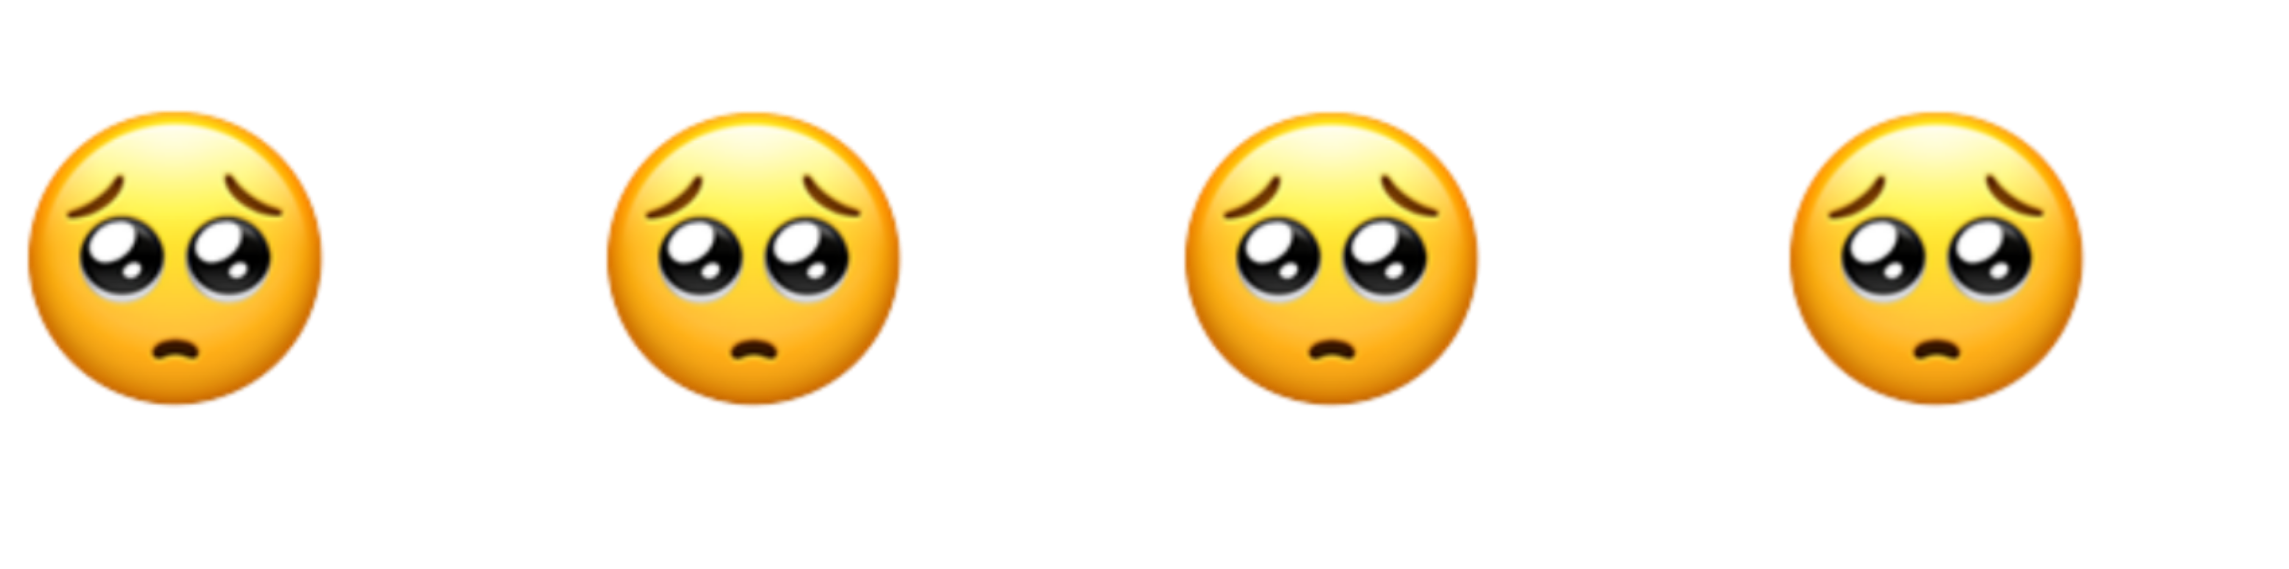 Gambar Emoji Risau Reka Bentuk Legenda Mudah Alih Vs Png Png Dan Vektor Untuk Muat Turun Percuma